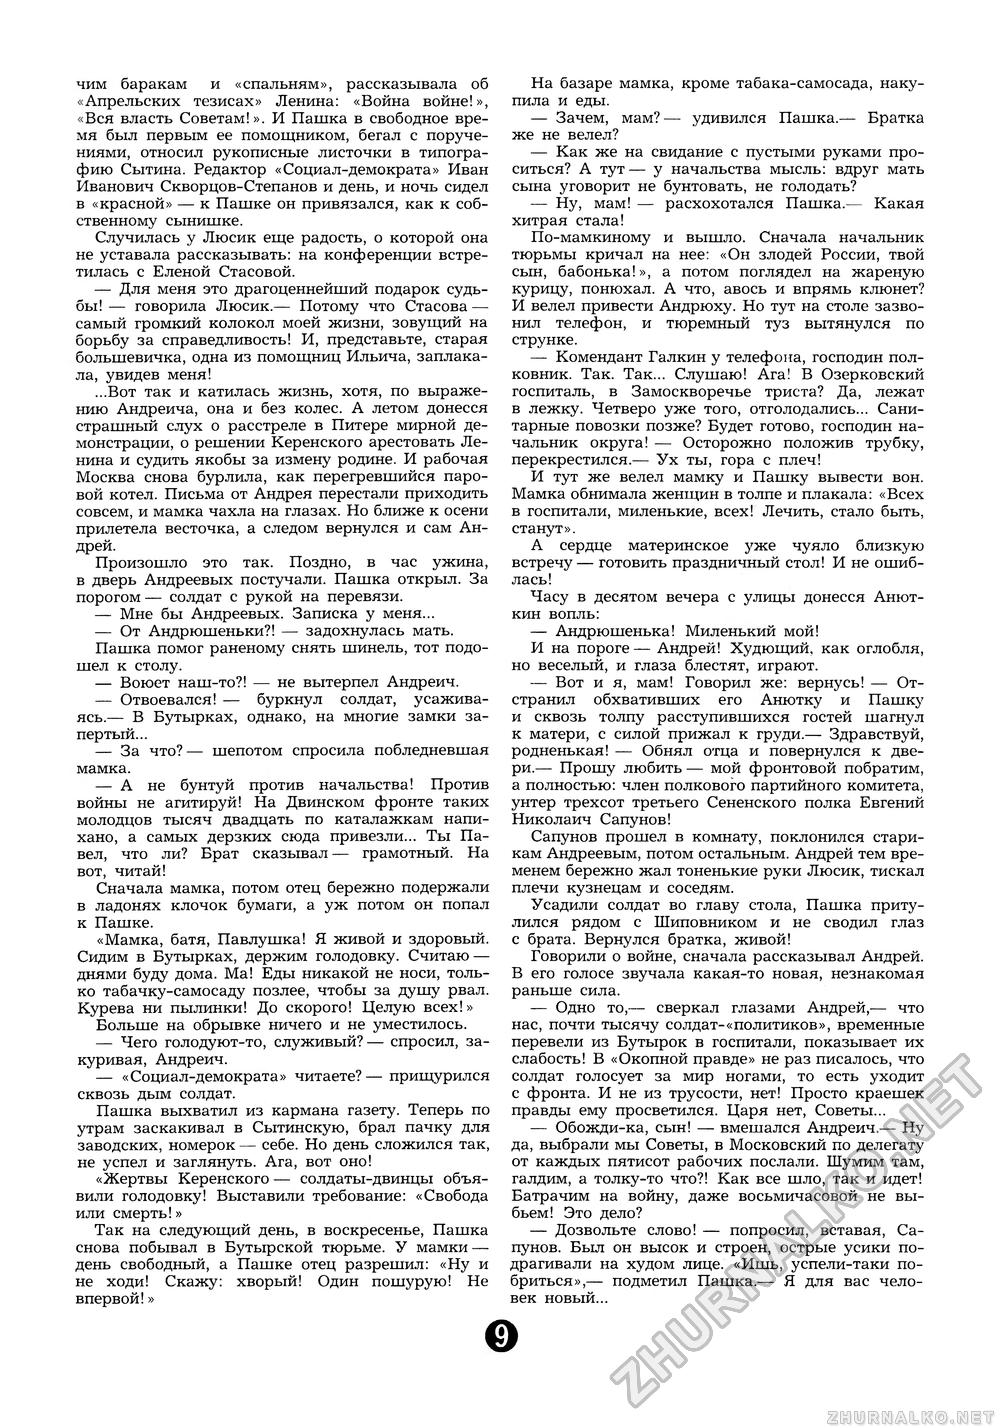 Пионер 1987-12, страница 11